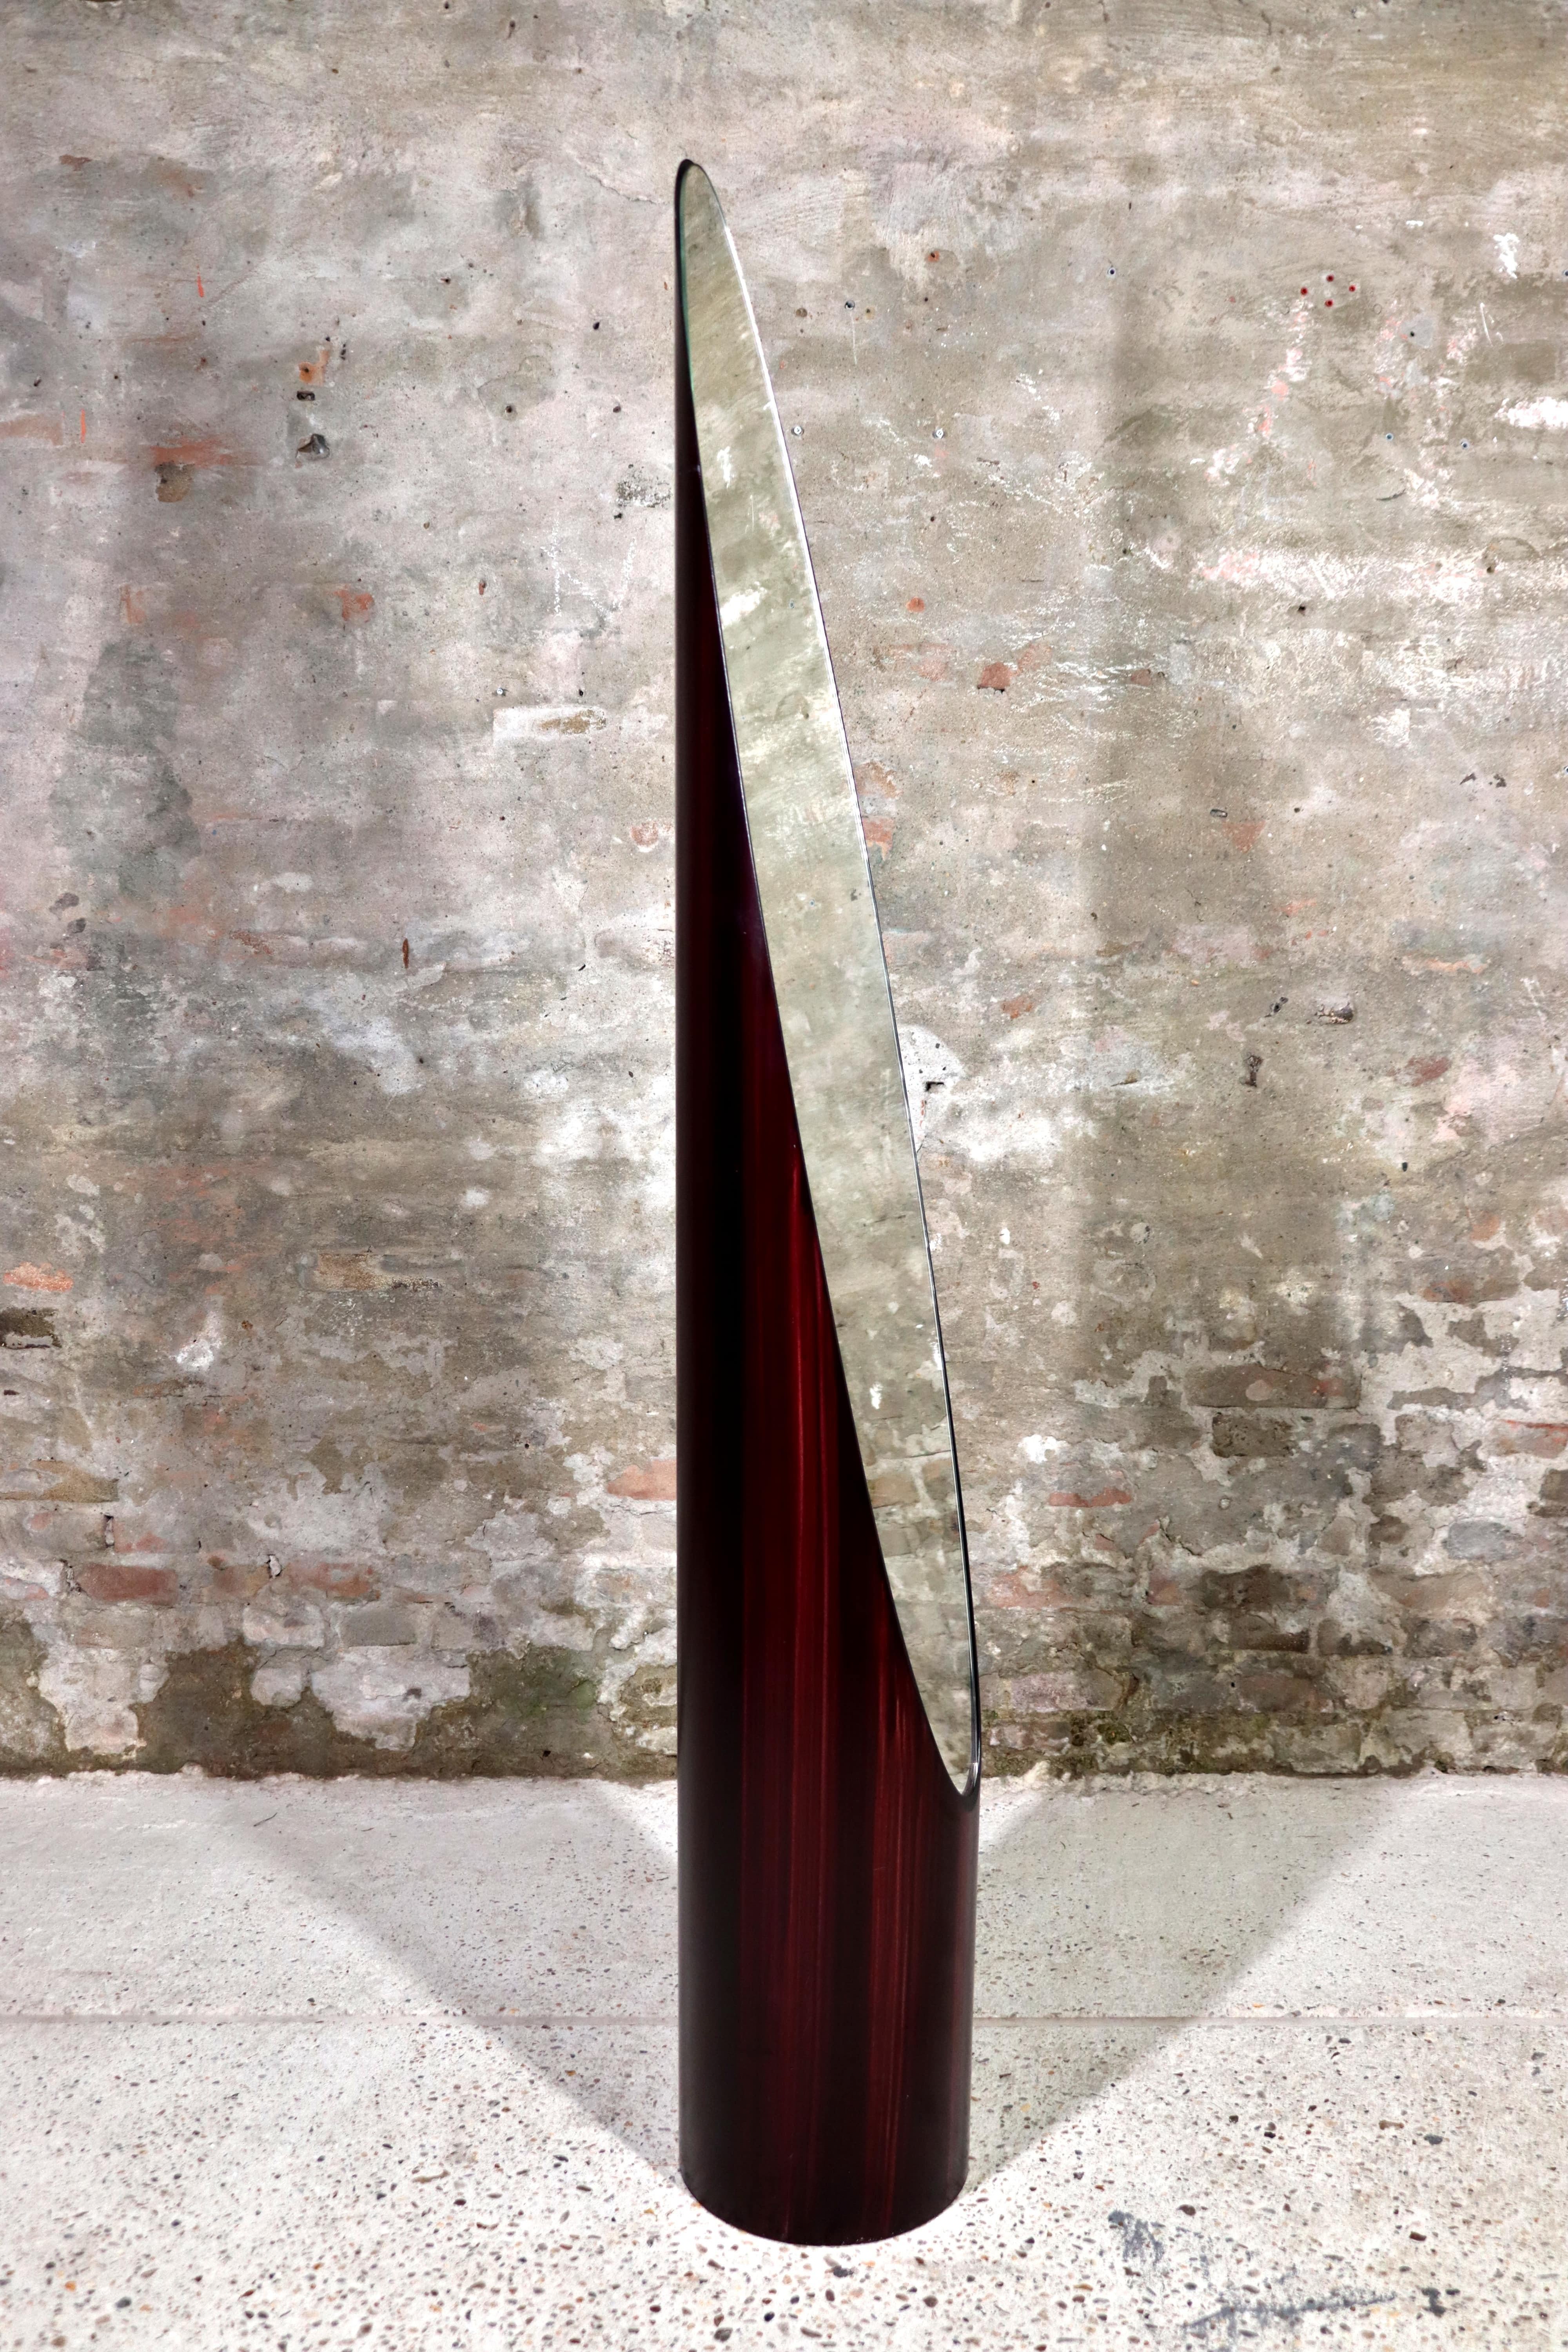 Este impresionante espejo para pintalabios se llama Unghia por su forma. Este diseño de Rodolfo Bonetto suele atribuirse a Roger Lecal para Chabrieres & Co. El práctico y elegante espejo ovalado de pie, fabricado en acrílico pintado con un acabado